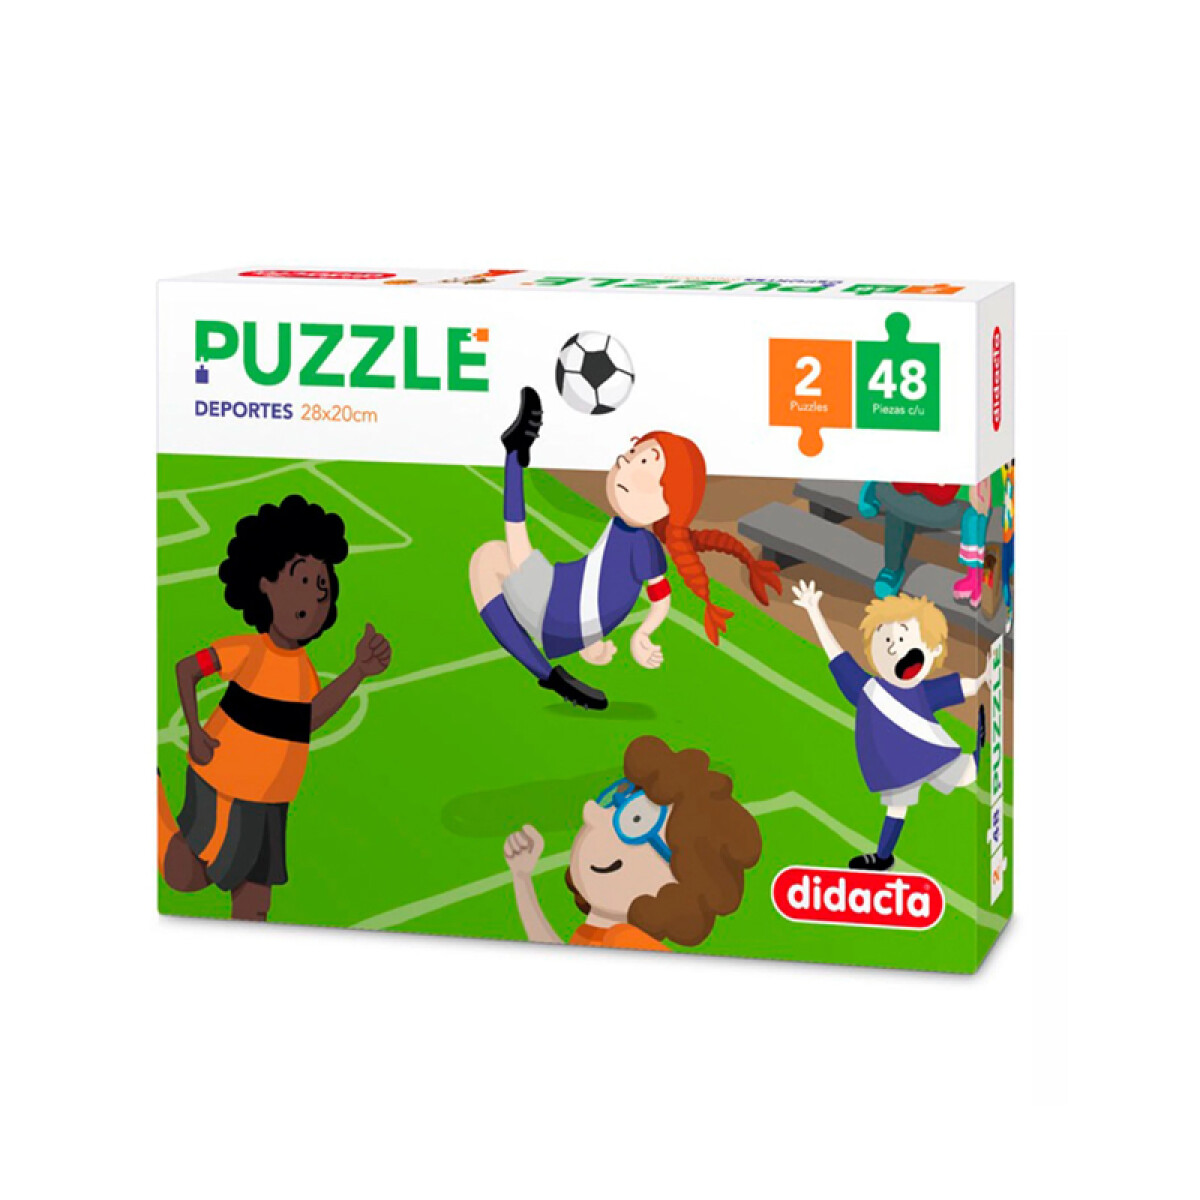 Set 2 Puzzles Didacta - Deportes 